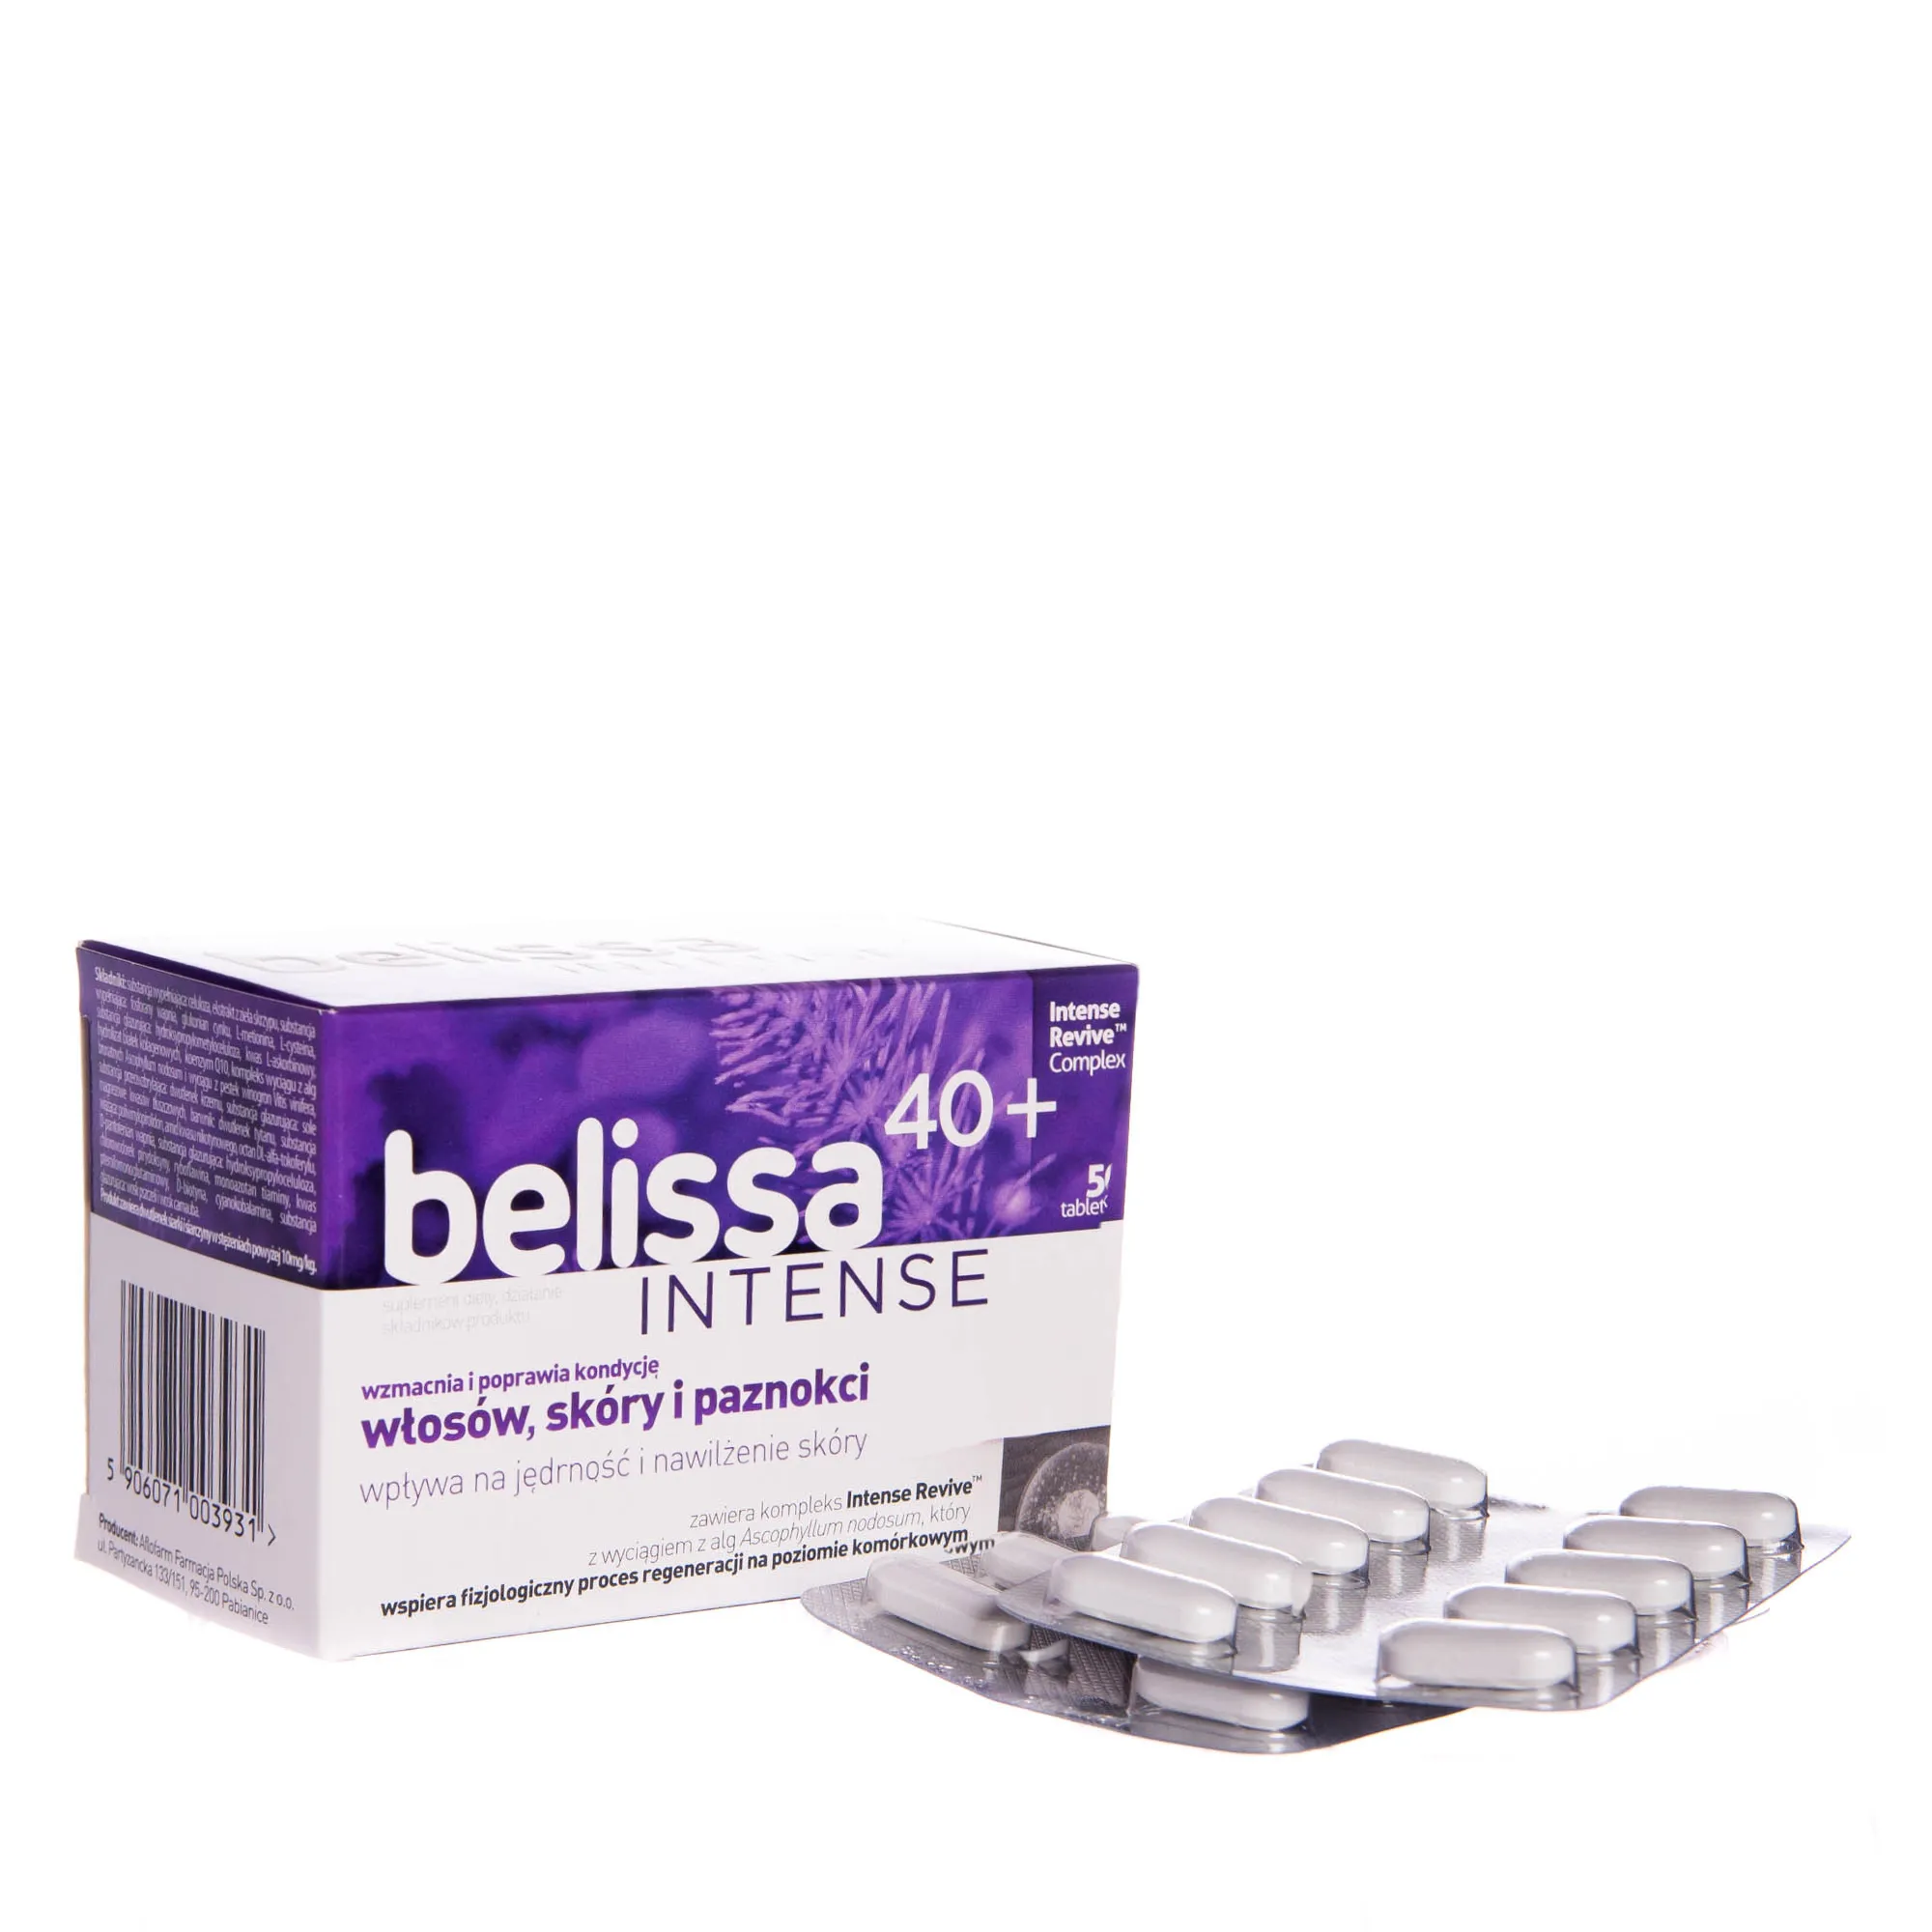 Belissa 40 + intense, suplement diety, 50 tabelka 